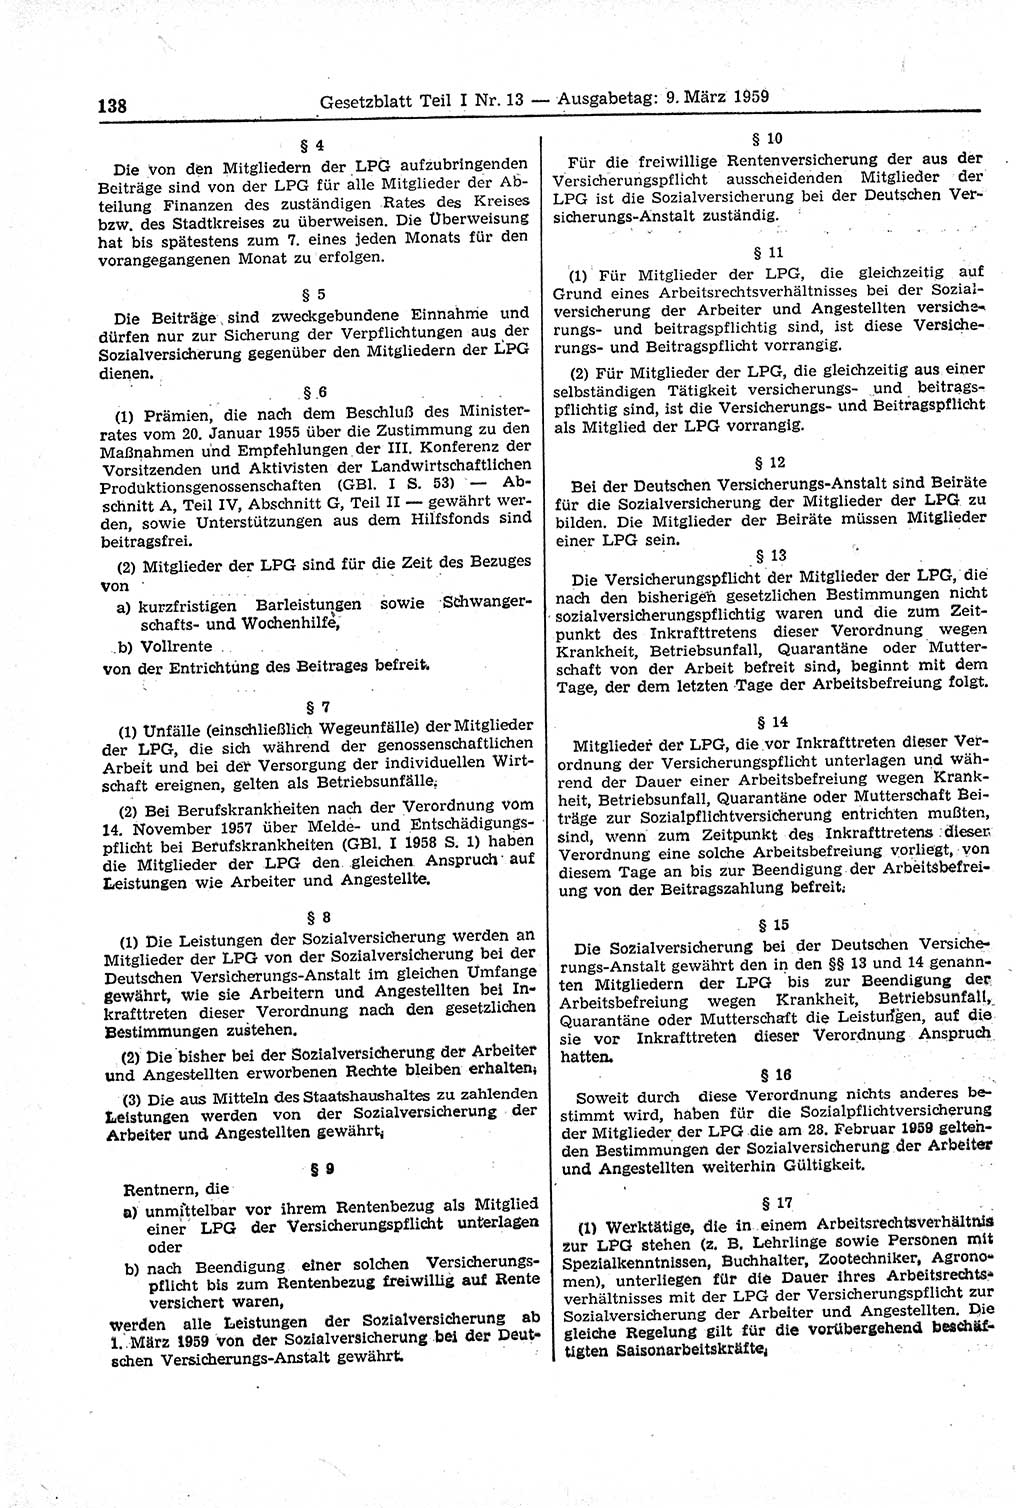 Gesetzblatt (GBl.) der Deutschen Demokratischen Republik (DDR) Teil Ⅰ 1959, Seite 138 (GBl. DDR Ⅰ 1959, S. 138)